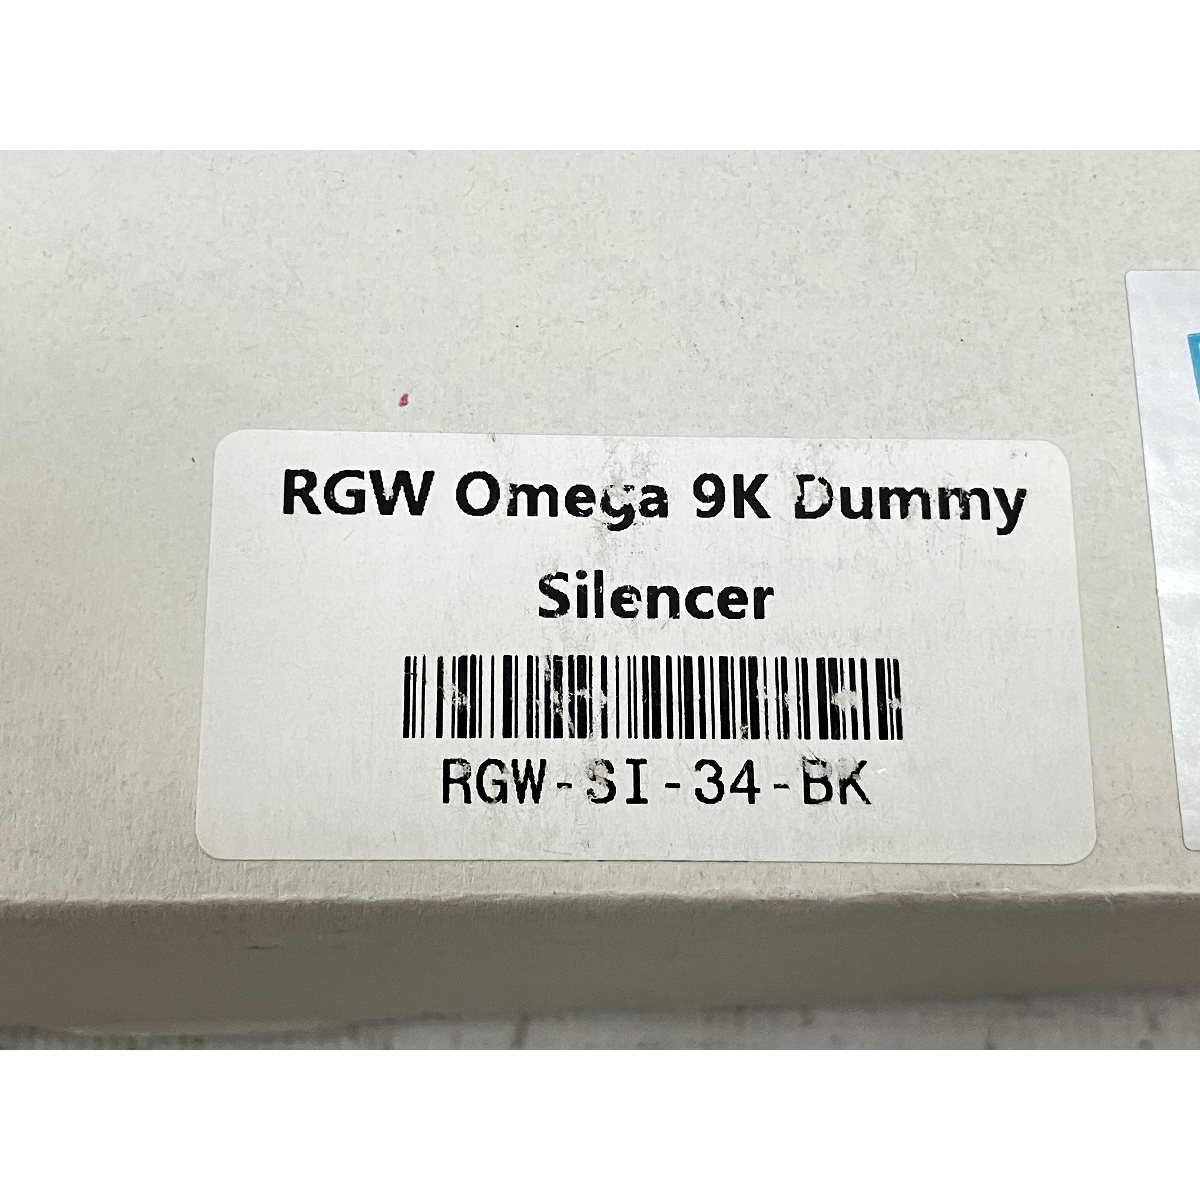 [ гарантия работы ]RGW Silencer M omega 9K модель 9mm муляж глушитель VFC MP5 пневматическое оружие аксессуары милитари б/у H8880184